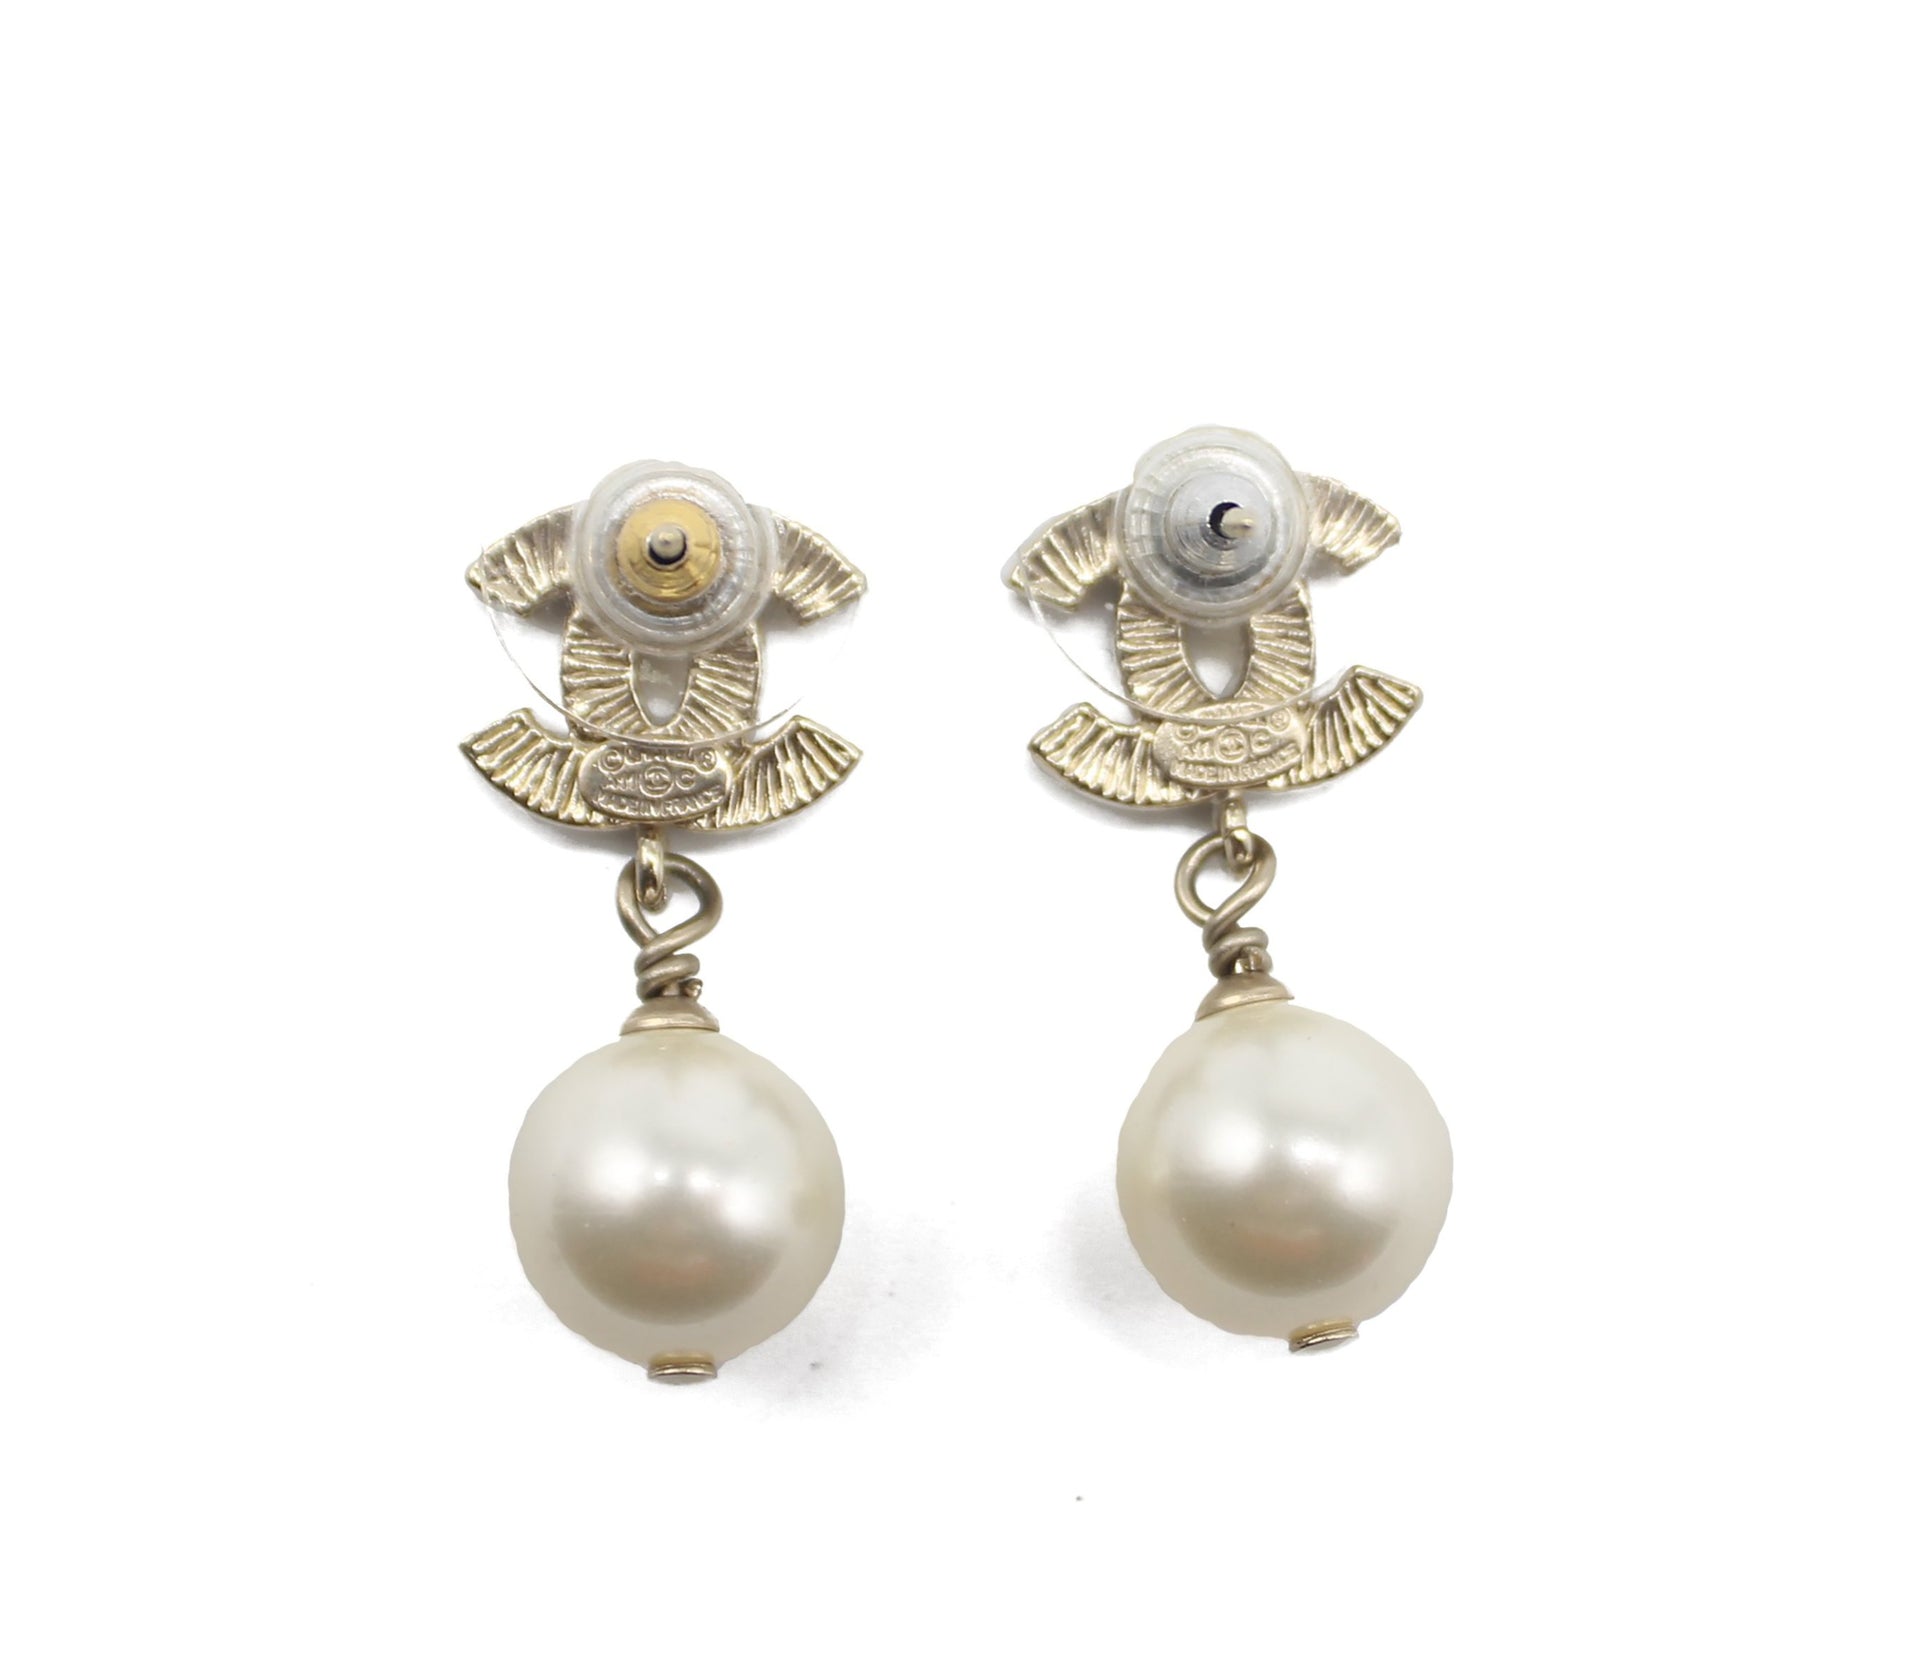 Chanel Gold CC & Pearl Drop Earrings